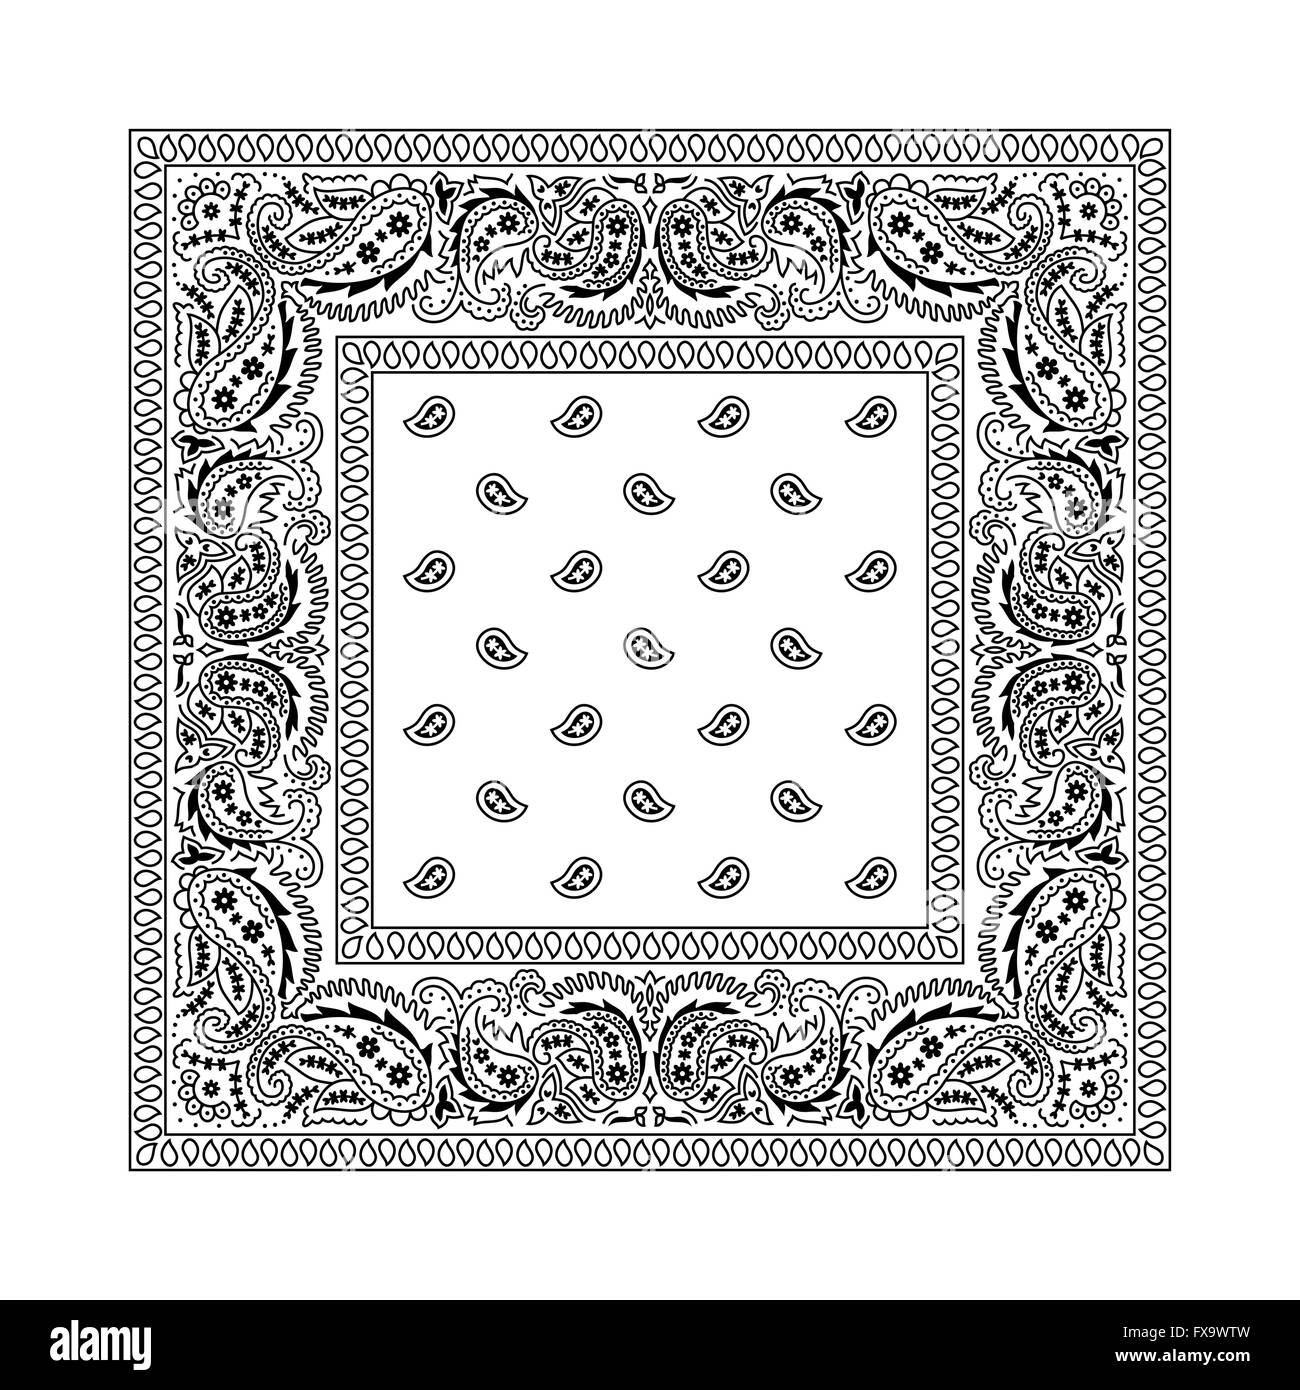 Pañuelo blanco Imágenes de stock blanco y negro - Página 2